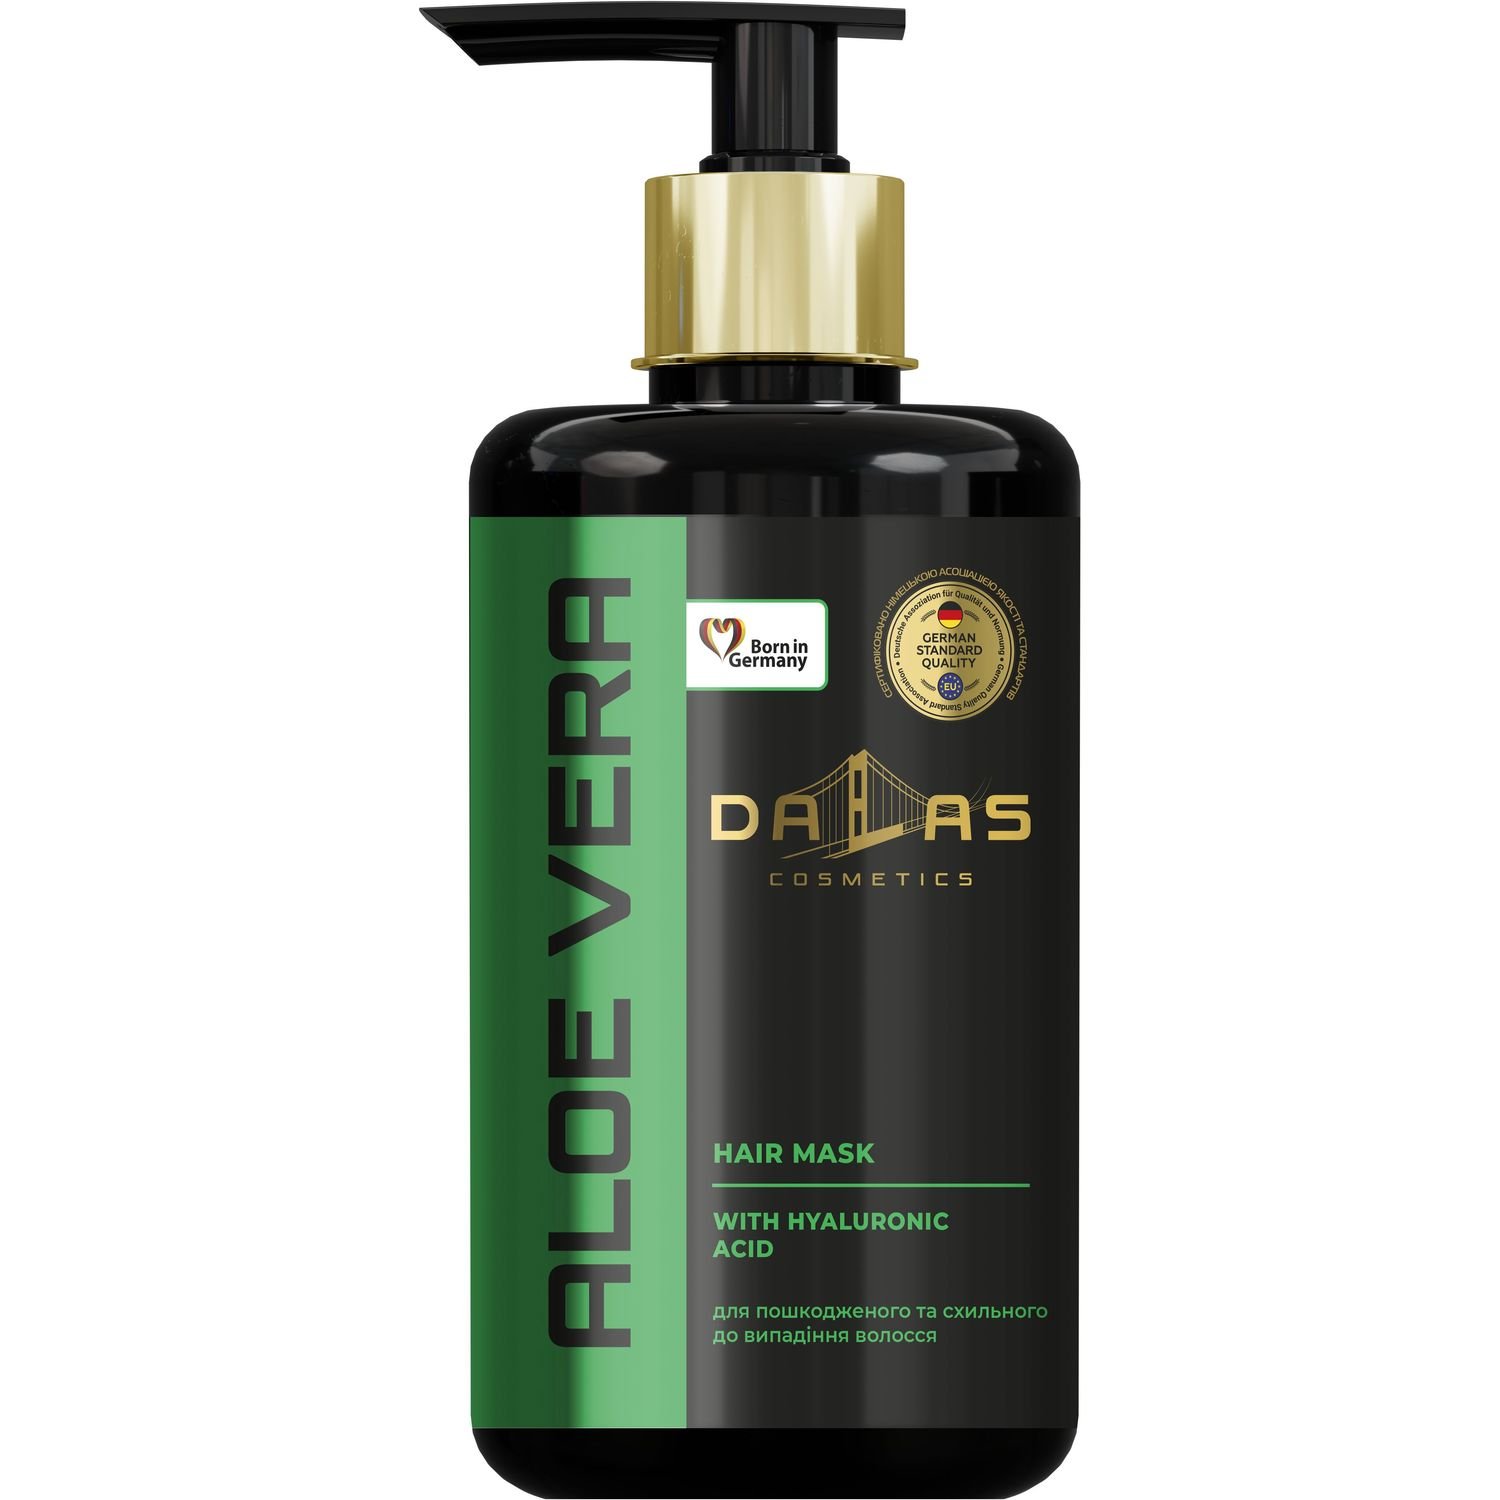 Маска для волос Dalas Aloe Vera гиалуроновой кислотой и натуральным соком алоэ, 900 мл - фото 1